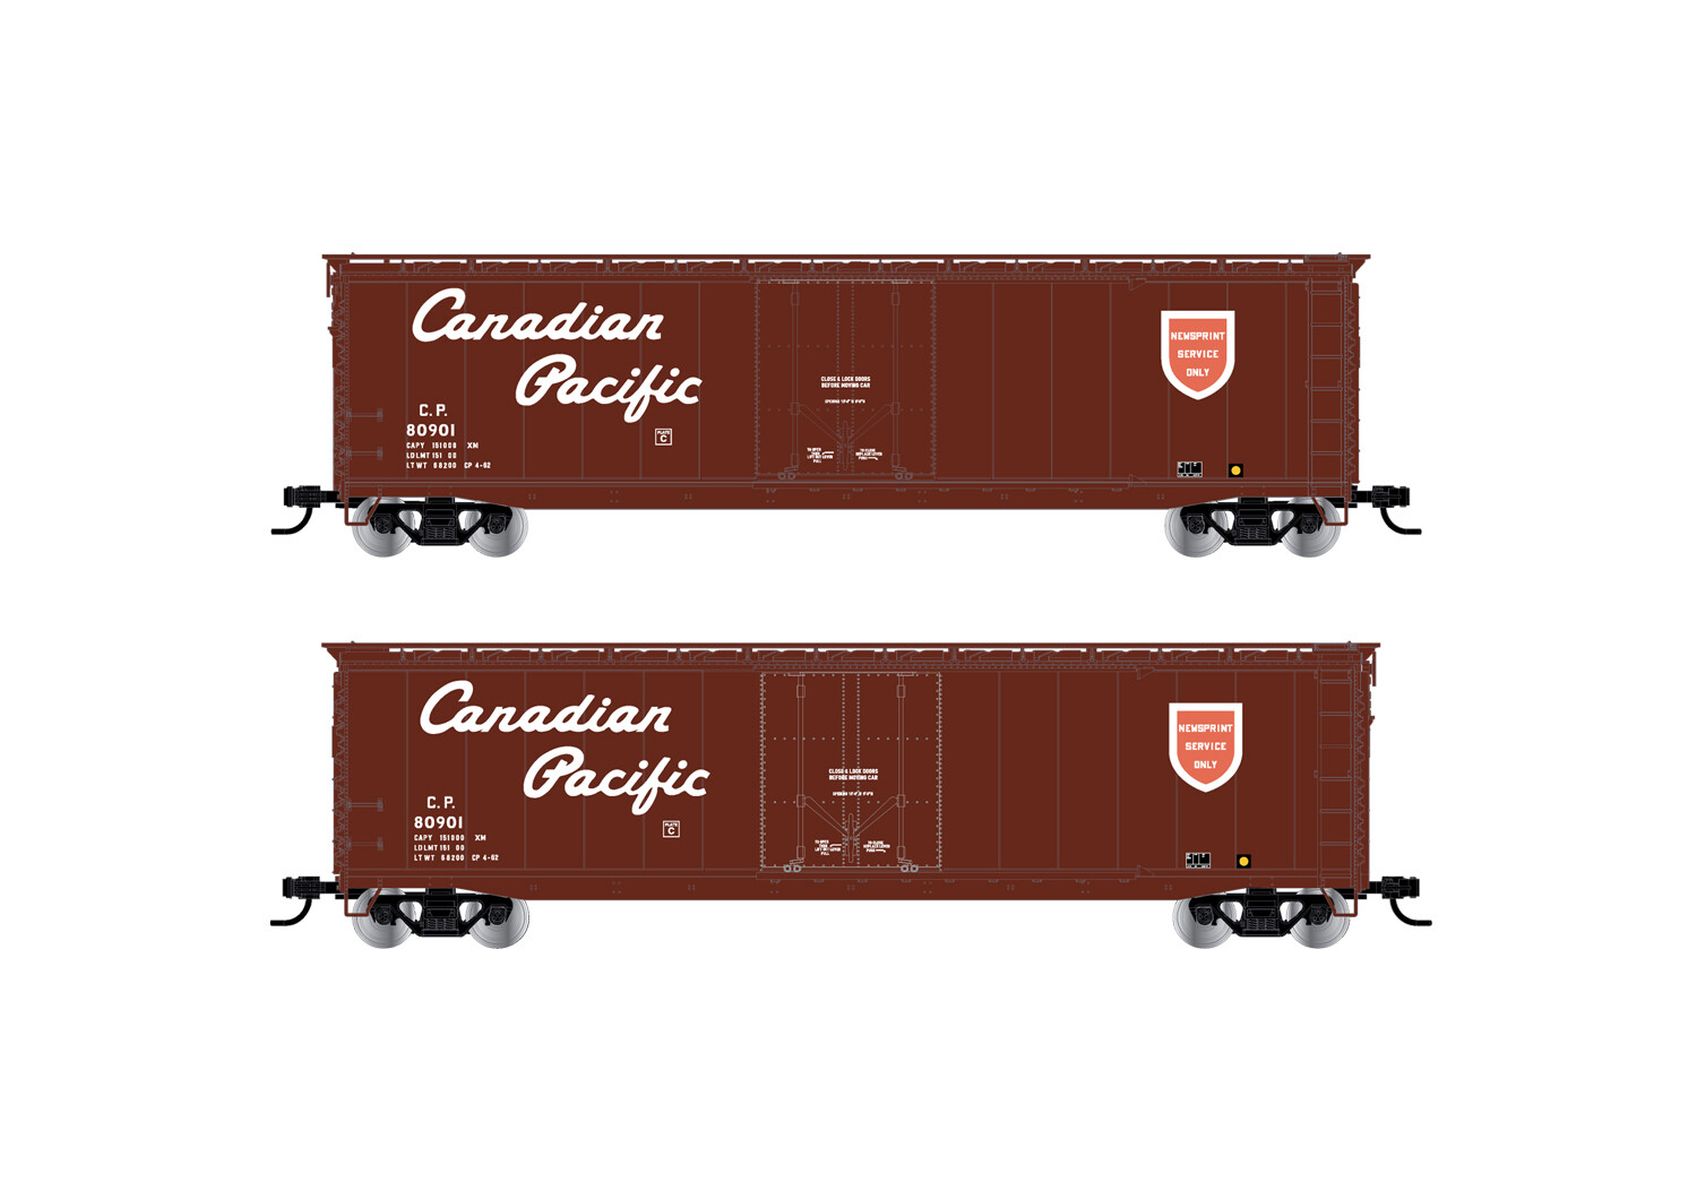 Rivarossi HR6636B - Gedeckter Güterwagen, Canadian Pacific, 80000, Ep.III